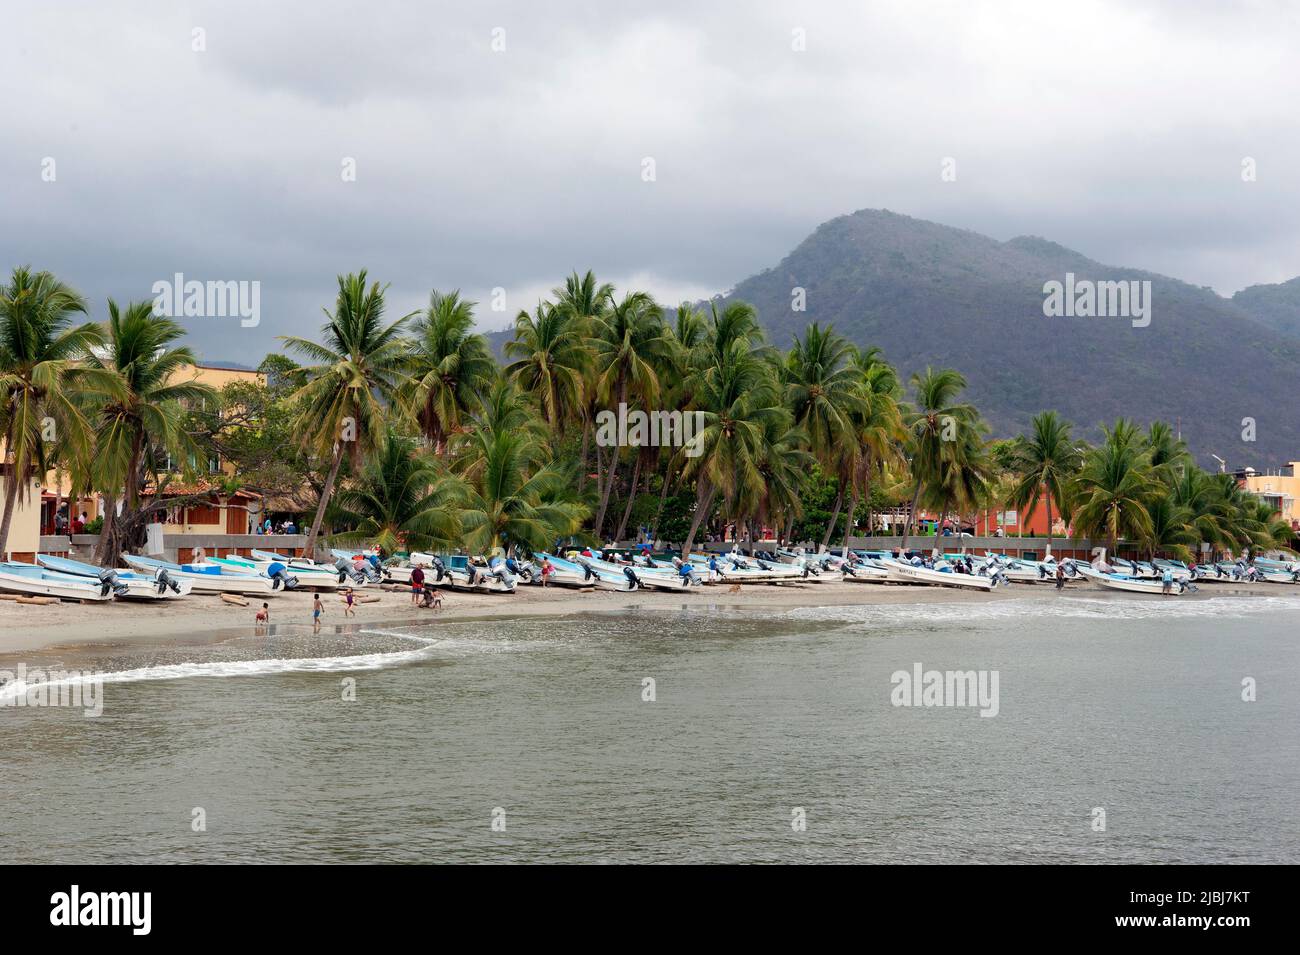 Vista panorámica de barcos de pesca en la playa con palmeras y colinas en Zihuatanejo, México Foto de stock